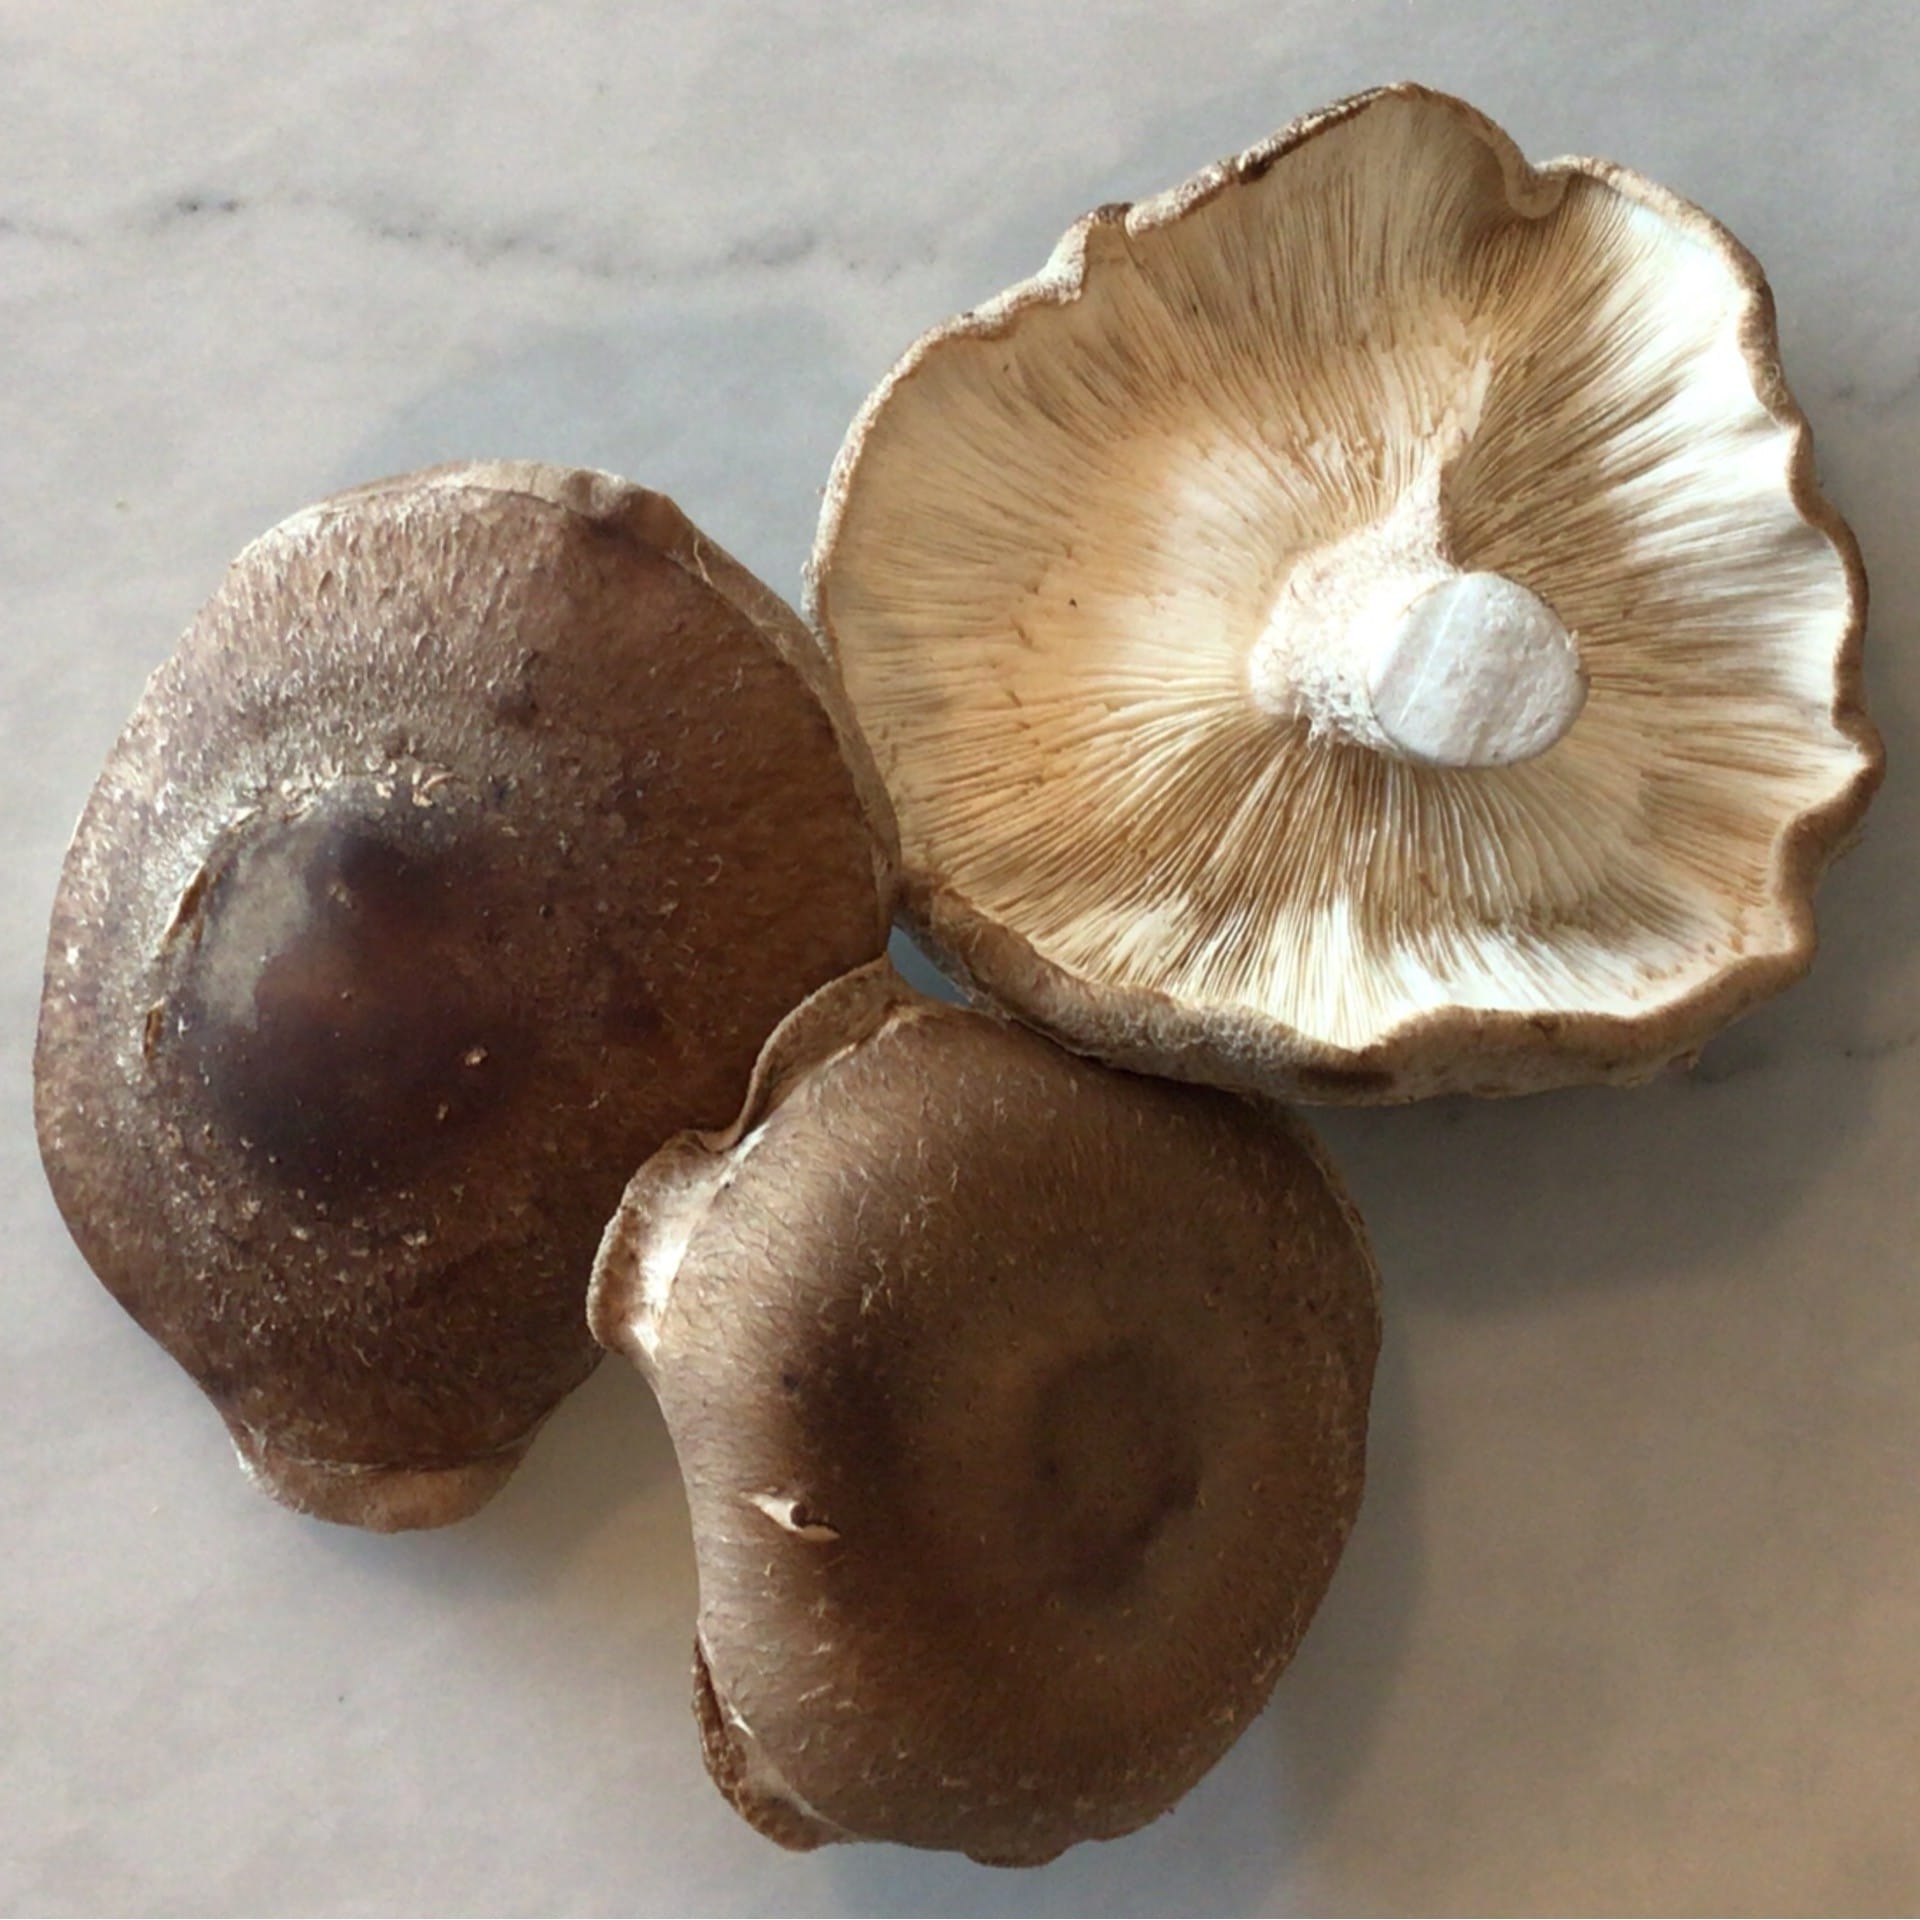 sold out last week shiitake mushrooms